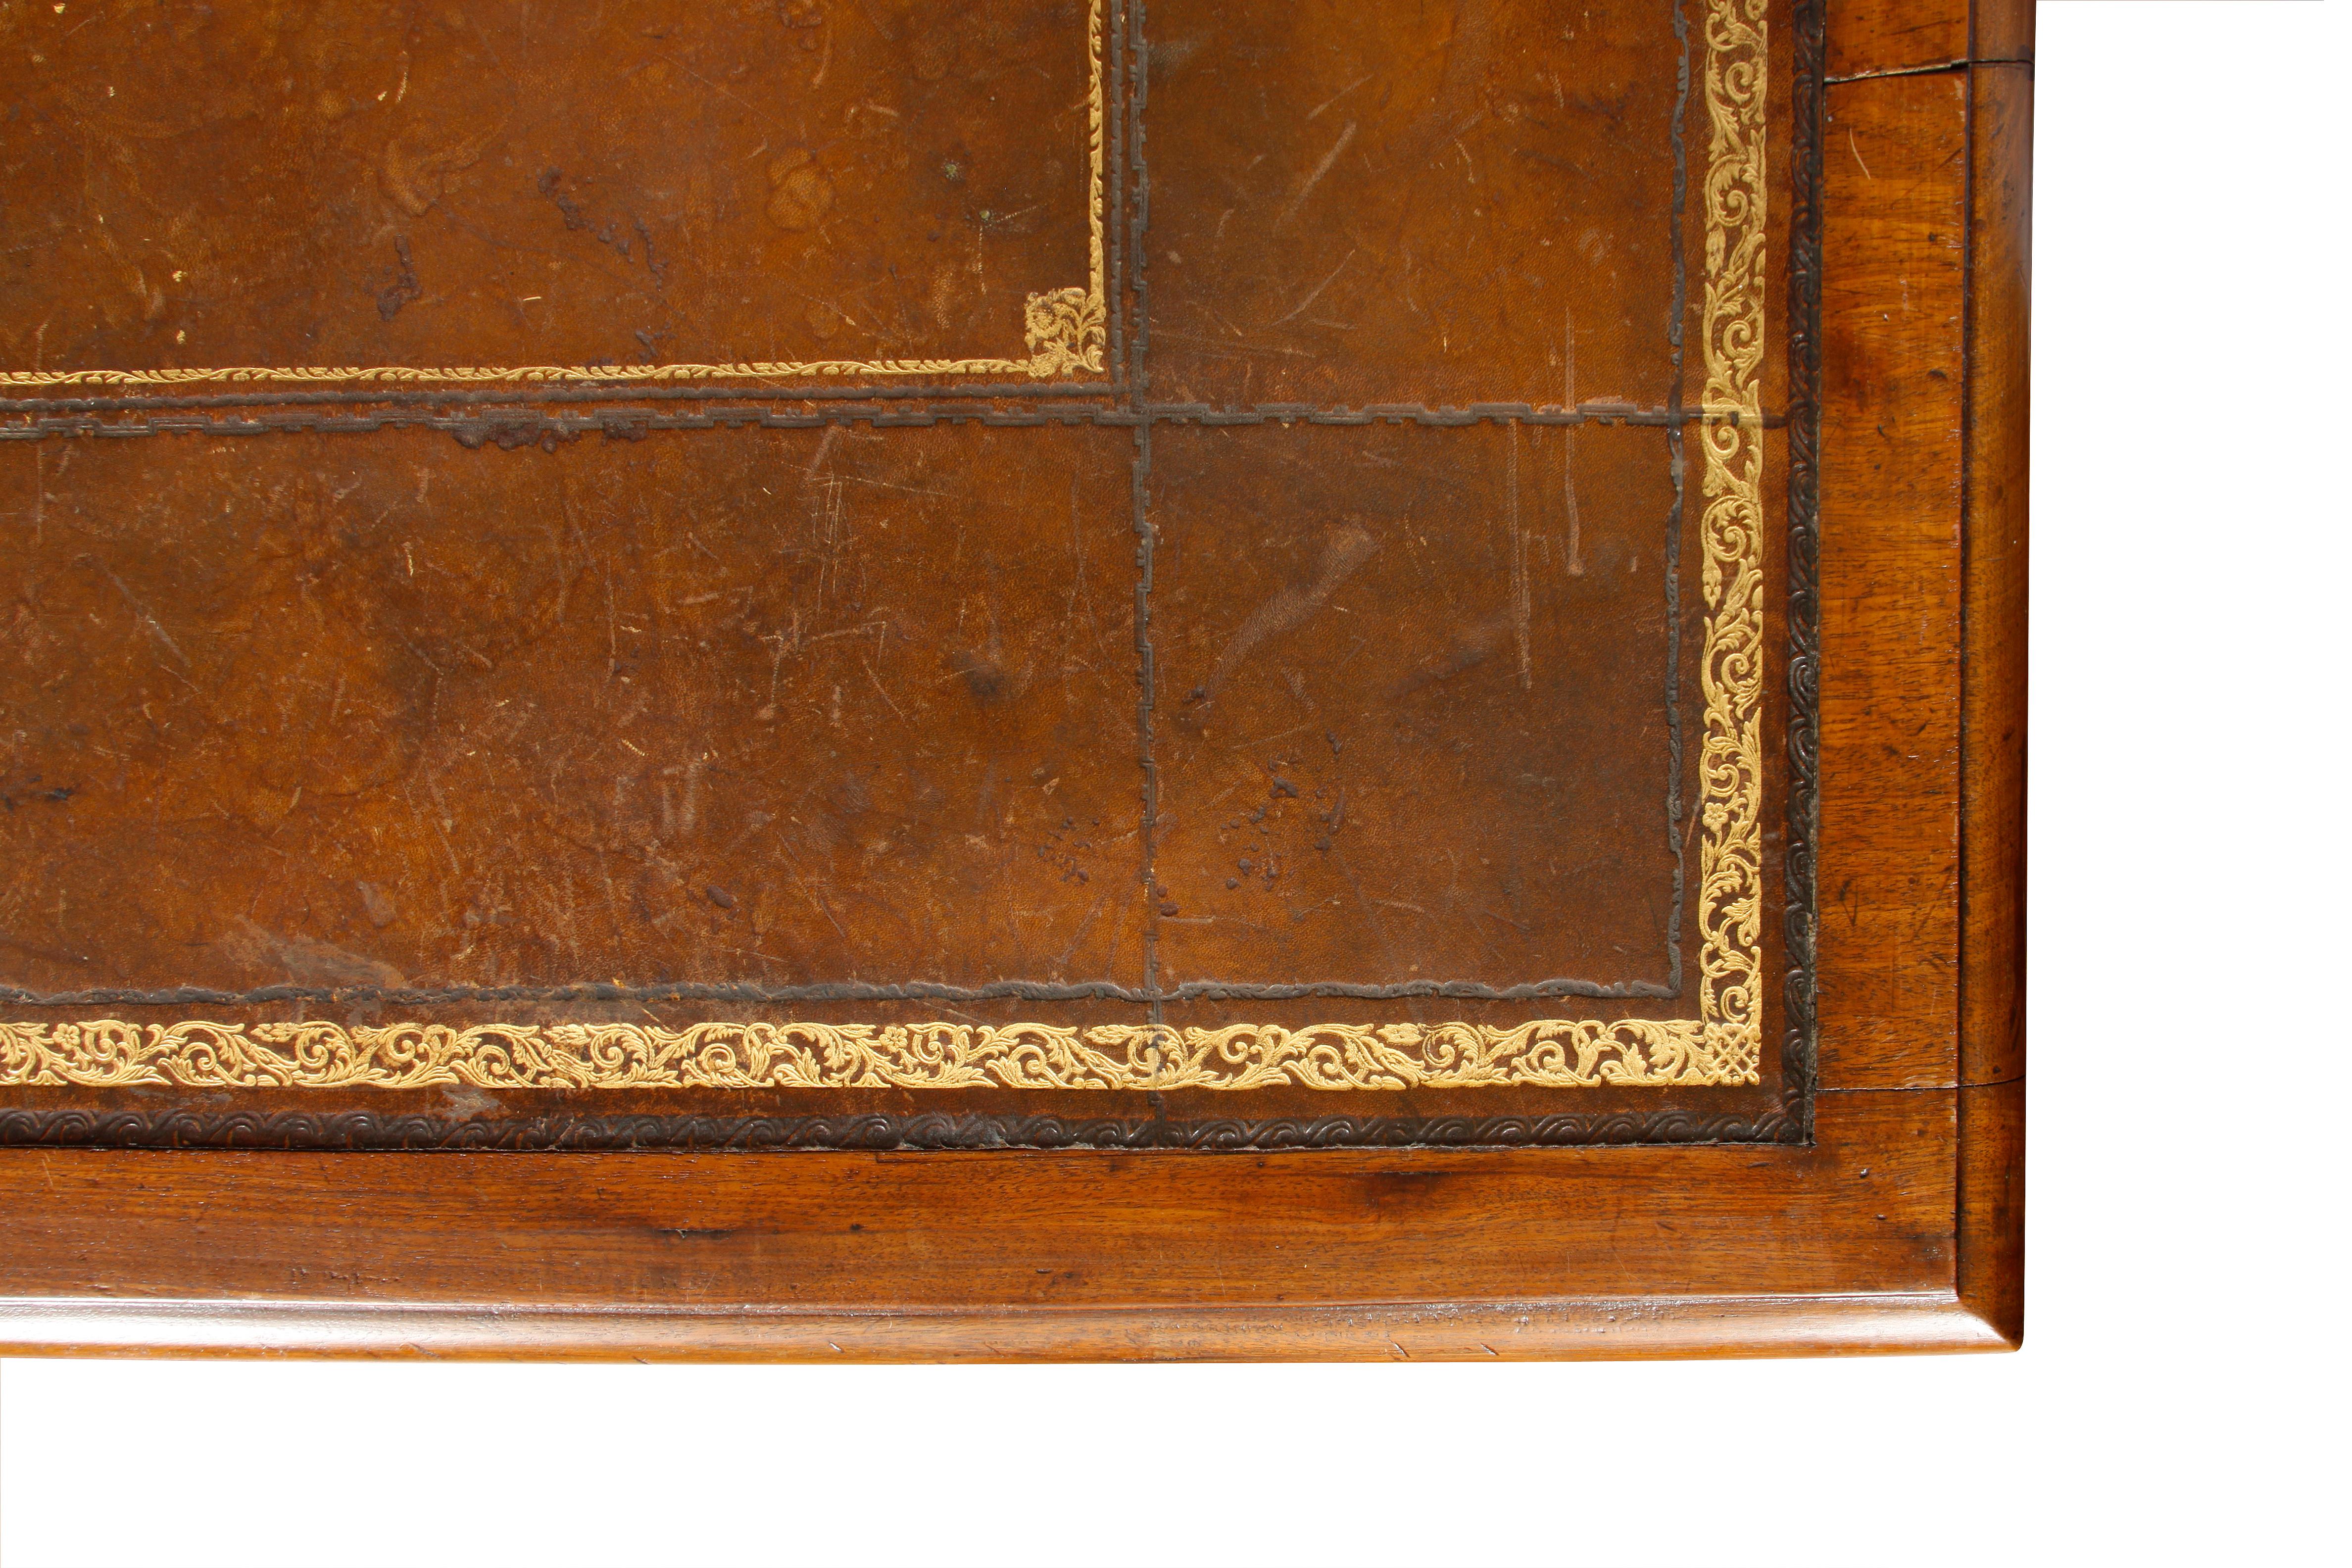 Antique regency leather top desk.